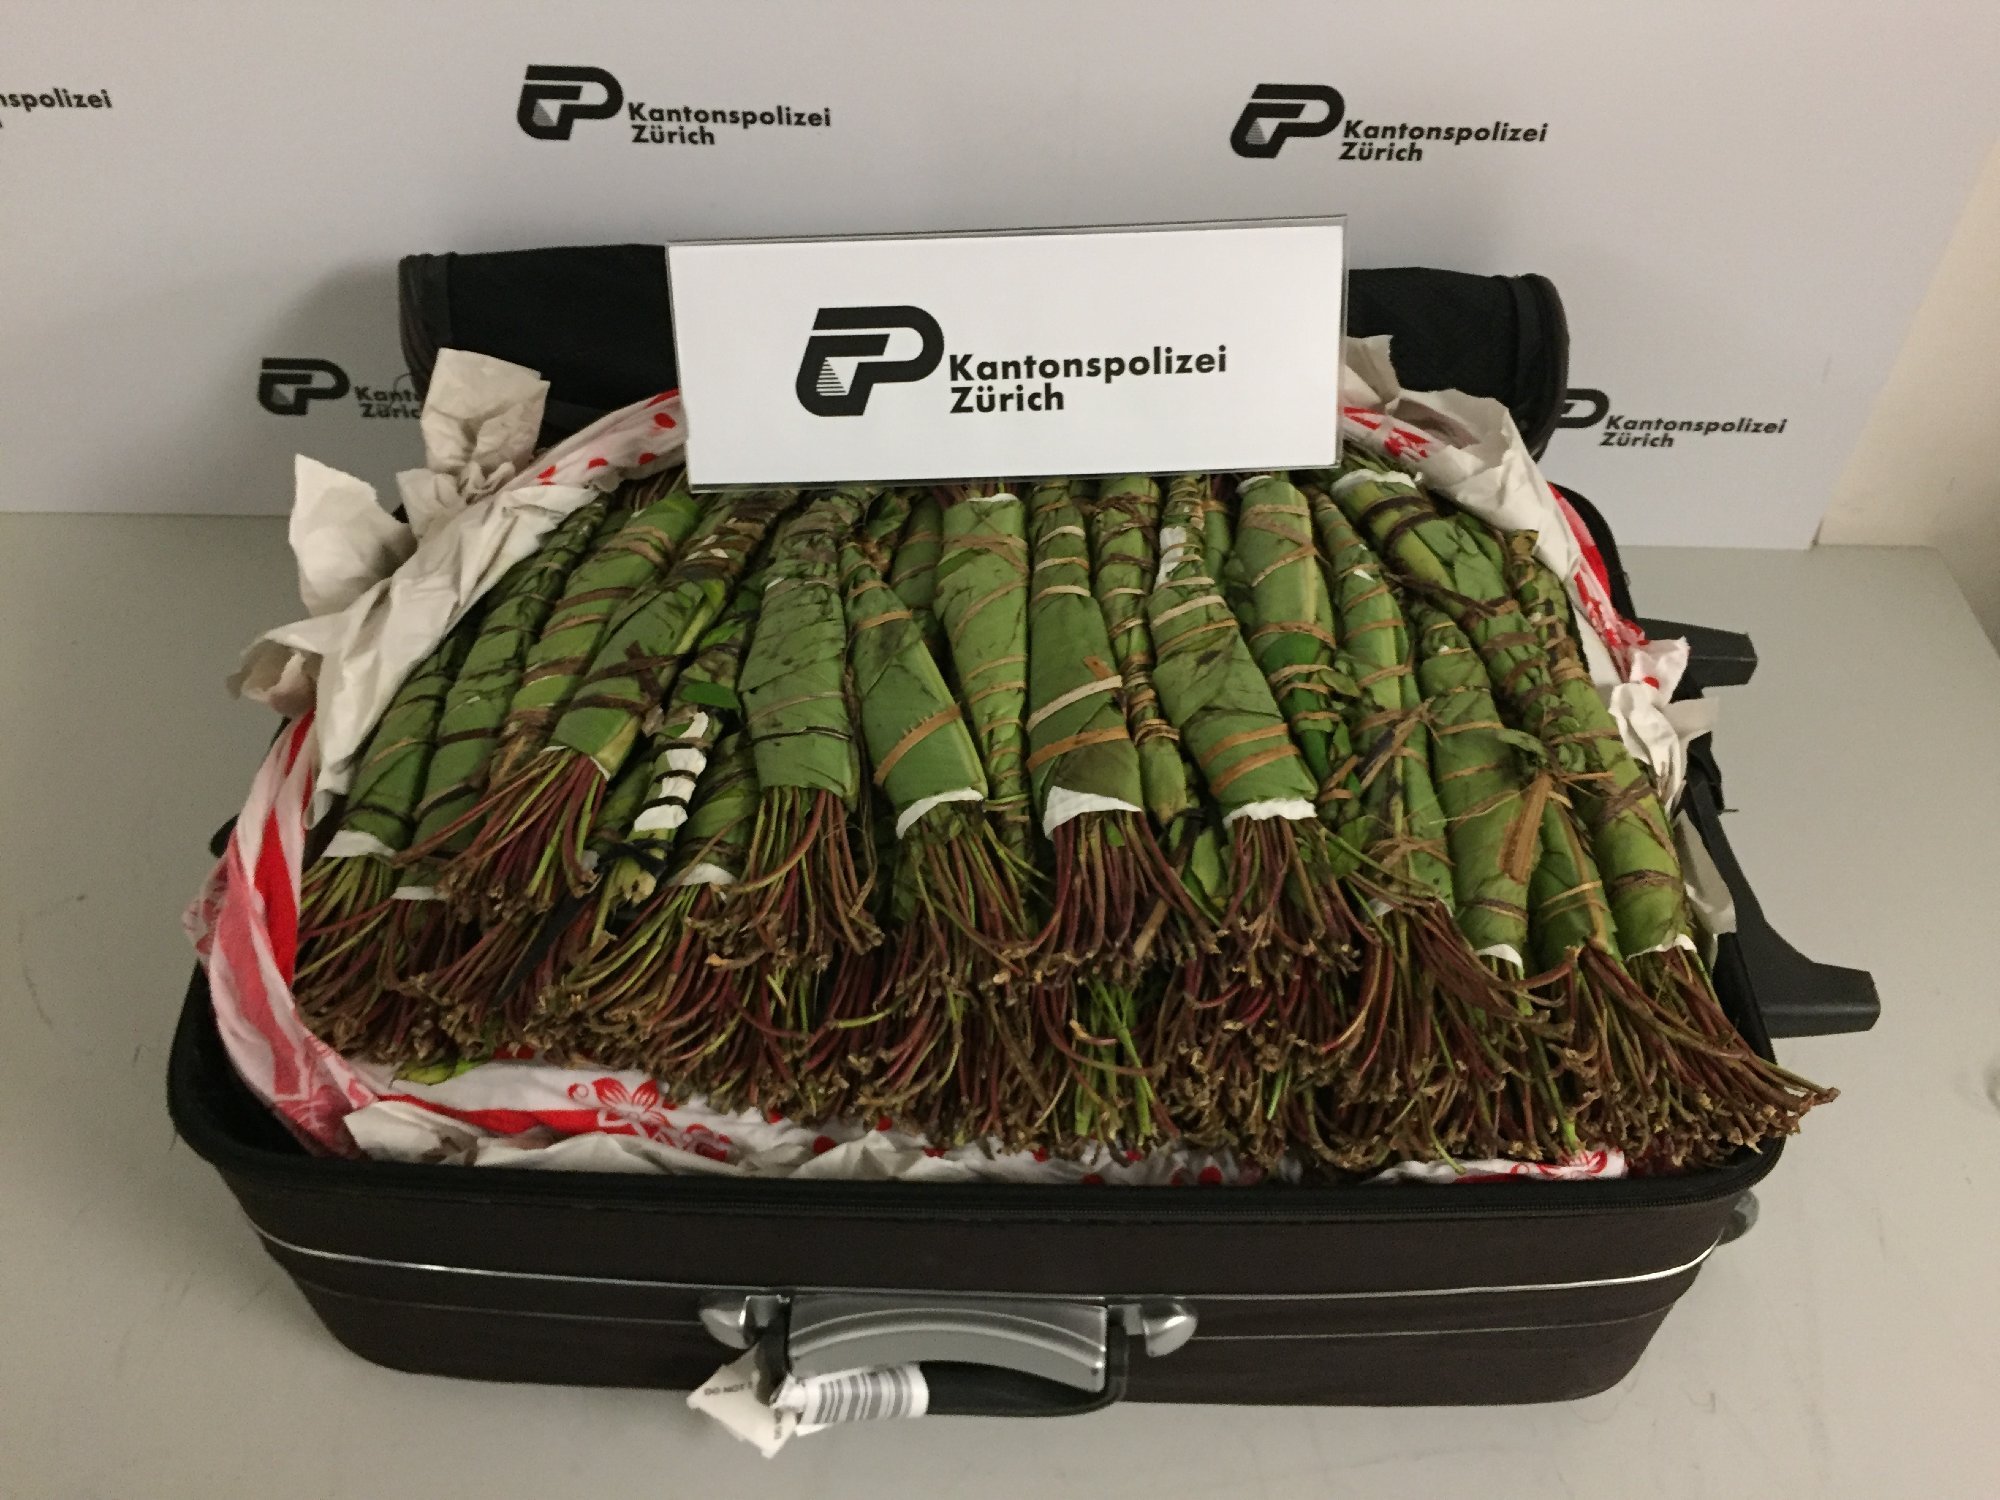 Le 9 octobre dernier, la police zurichoise et les douaniers ont trouvé environ 50 kilos de khat dissimulés dans les bagages d'un Britannique.